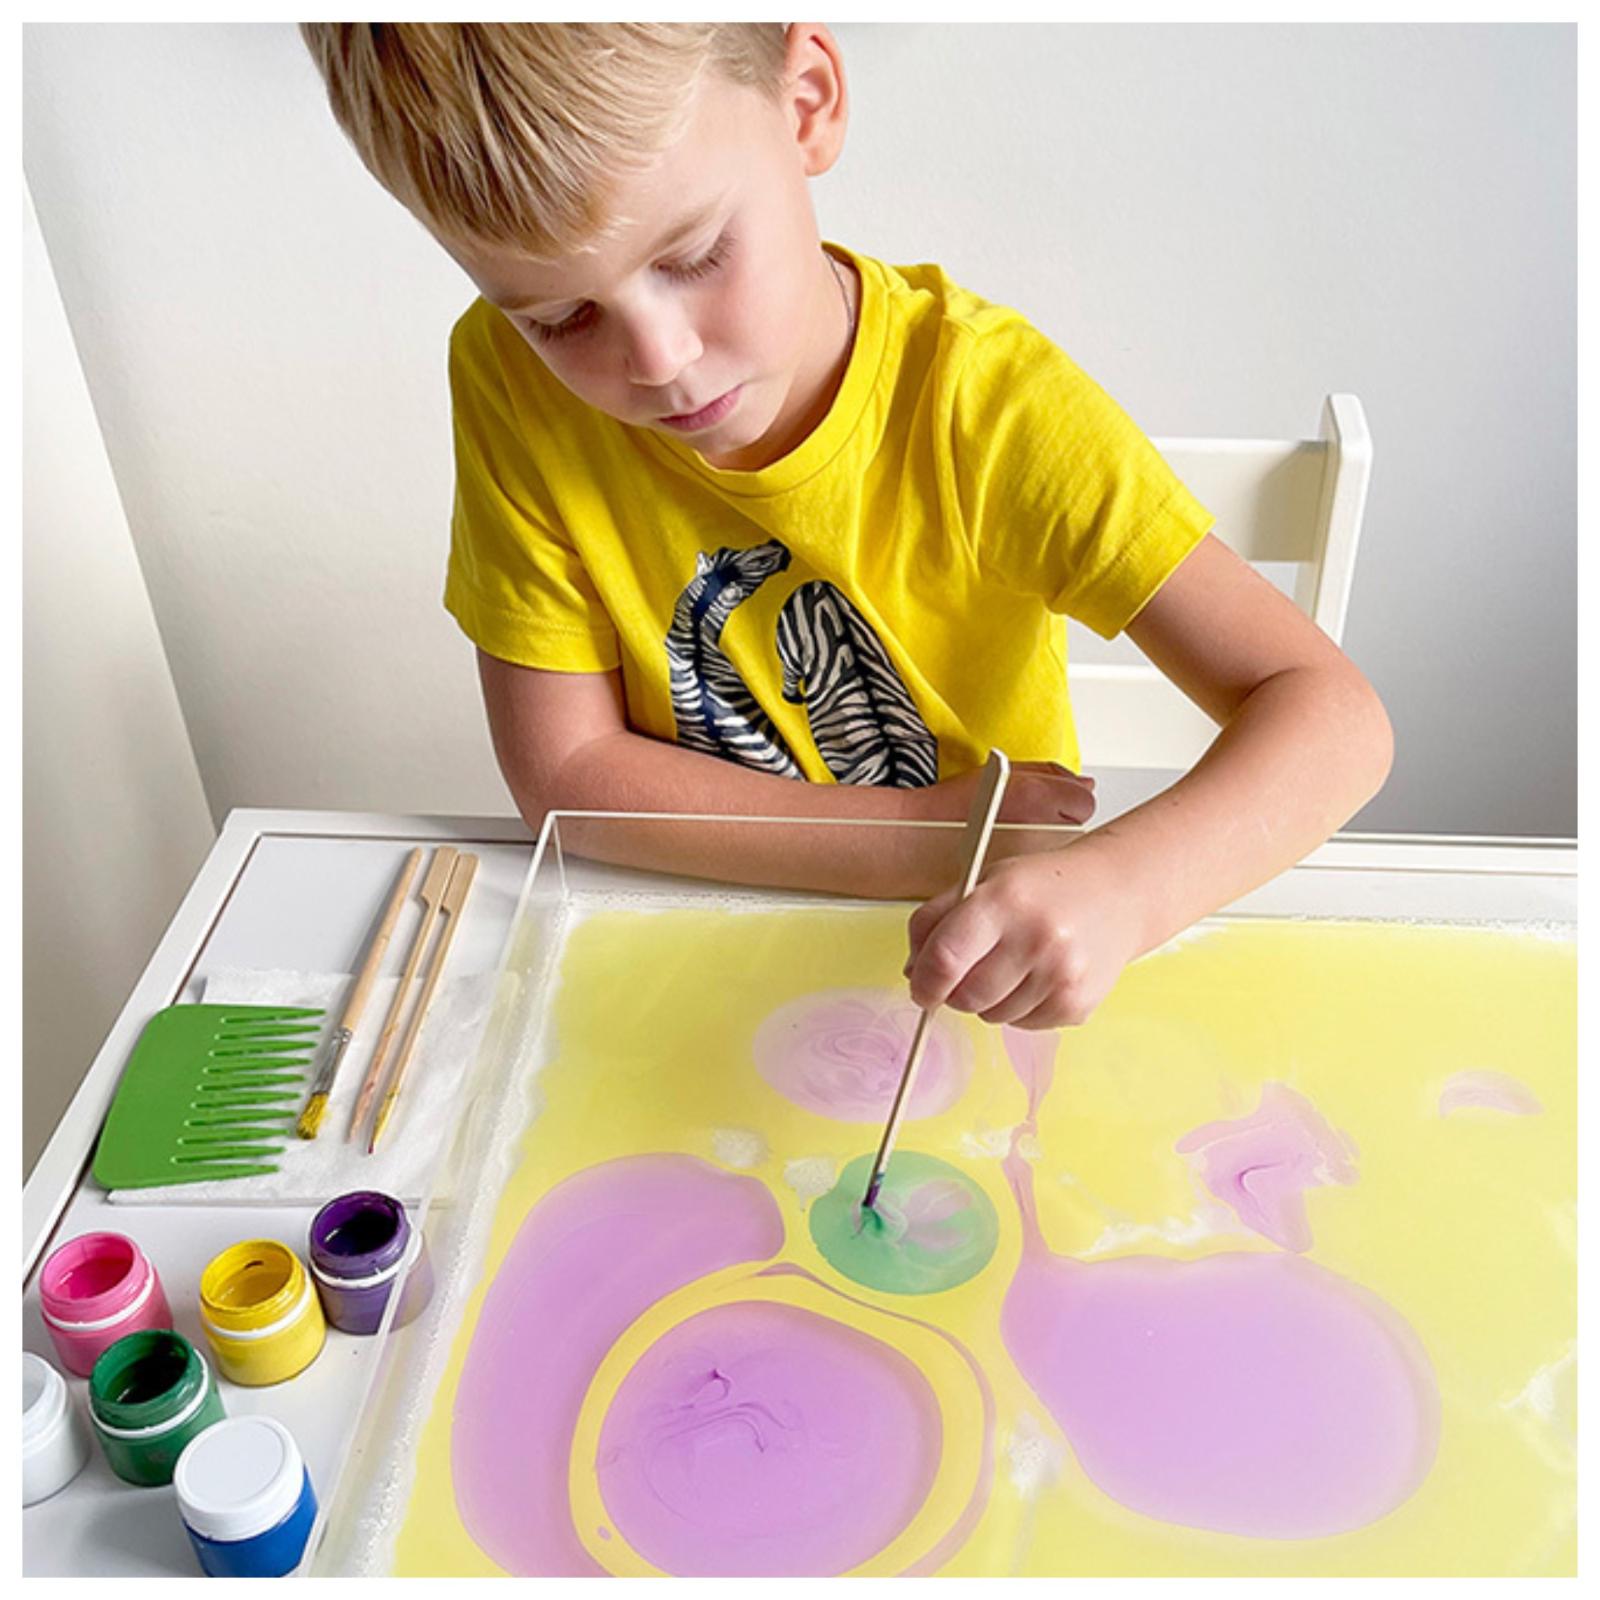 Рисование на воде доступно всем детям, независимо от возраста и уровня художественных навыков